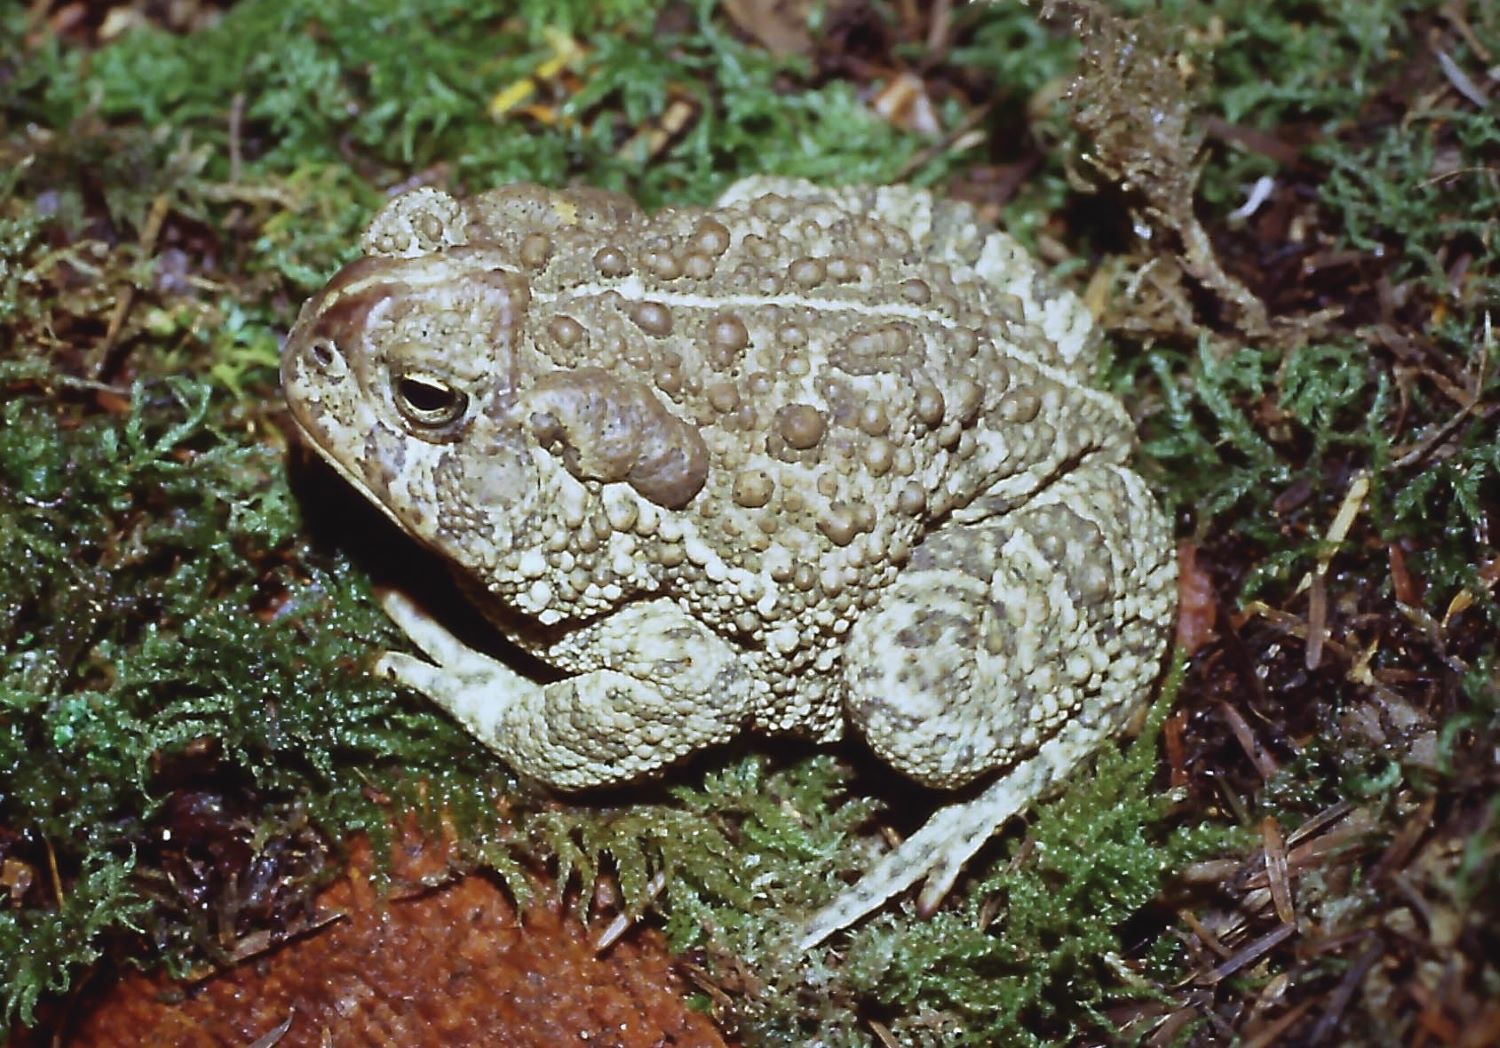 A Woodhouseâs toad on a bed of moss.